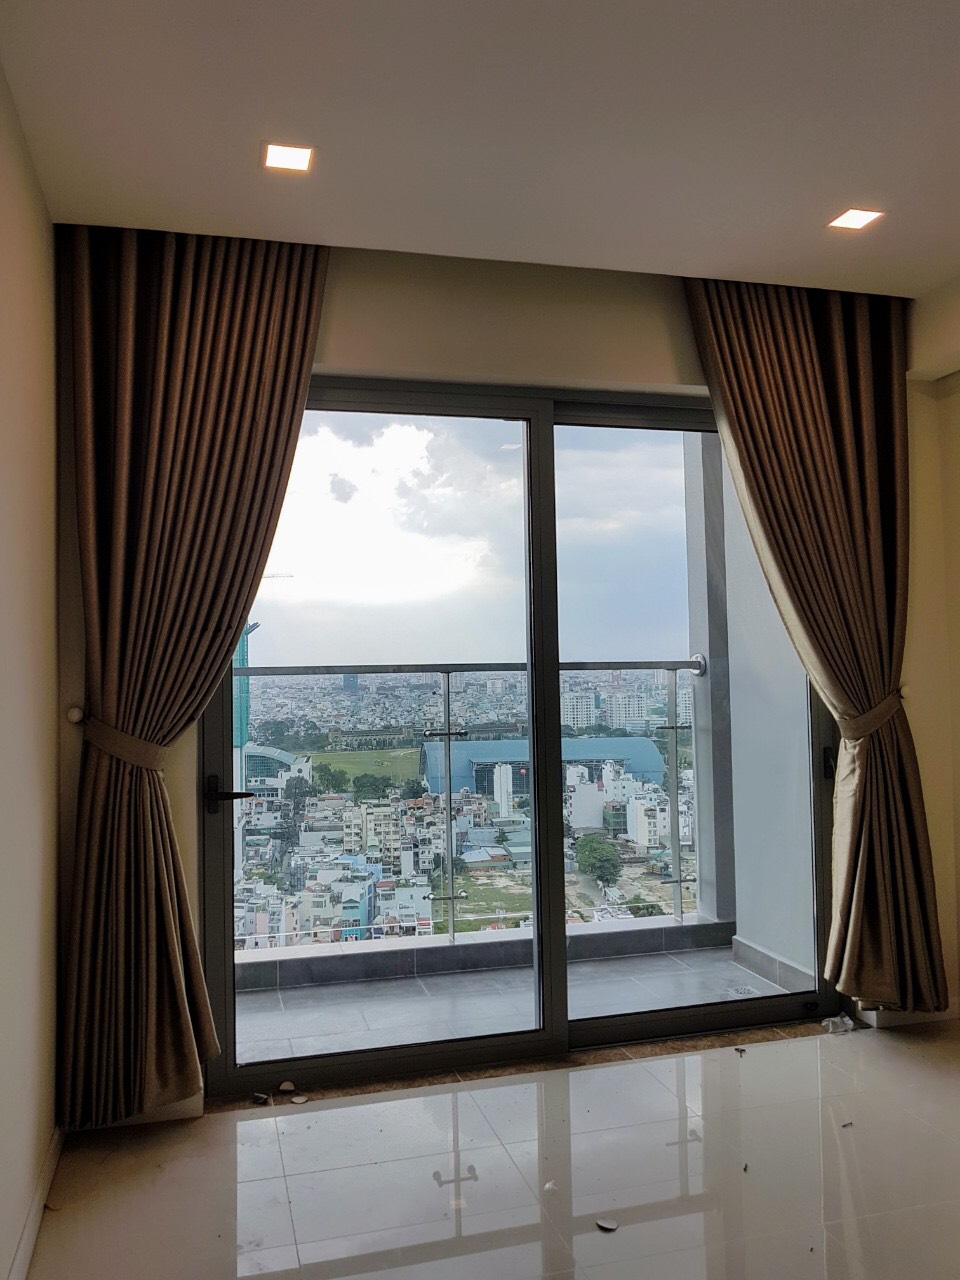 Cần bán căn hộ Rivera Park, Thành Thái, Quận 10, 74m2, 2pn, view thoáng, giá 4.08 tỷ. LH: 0933.722.272